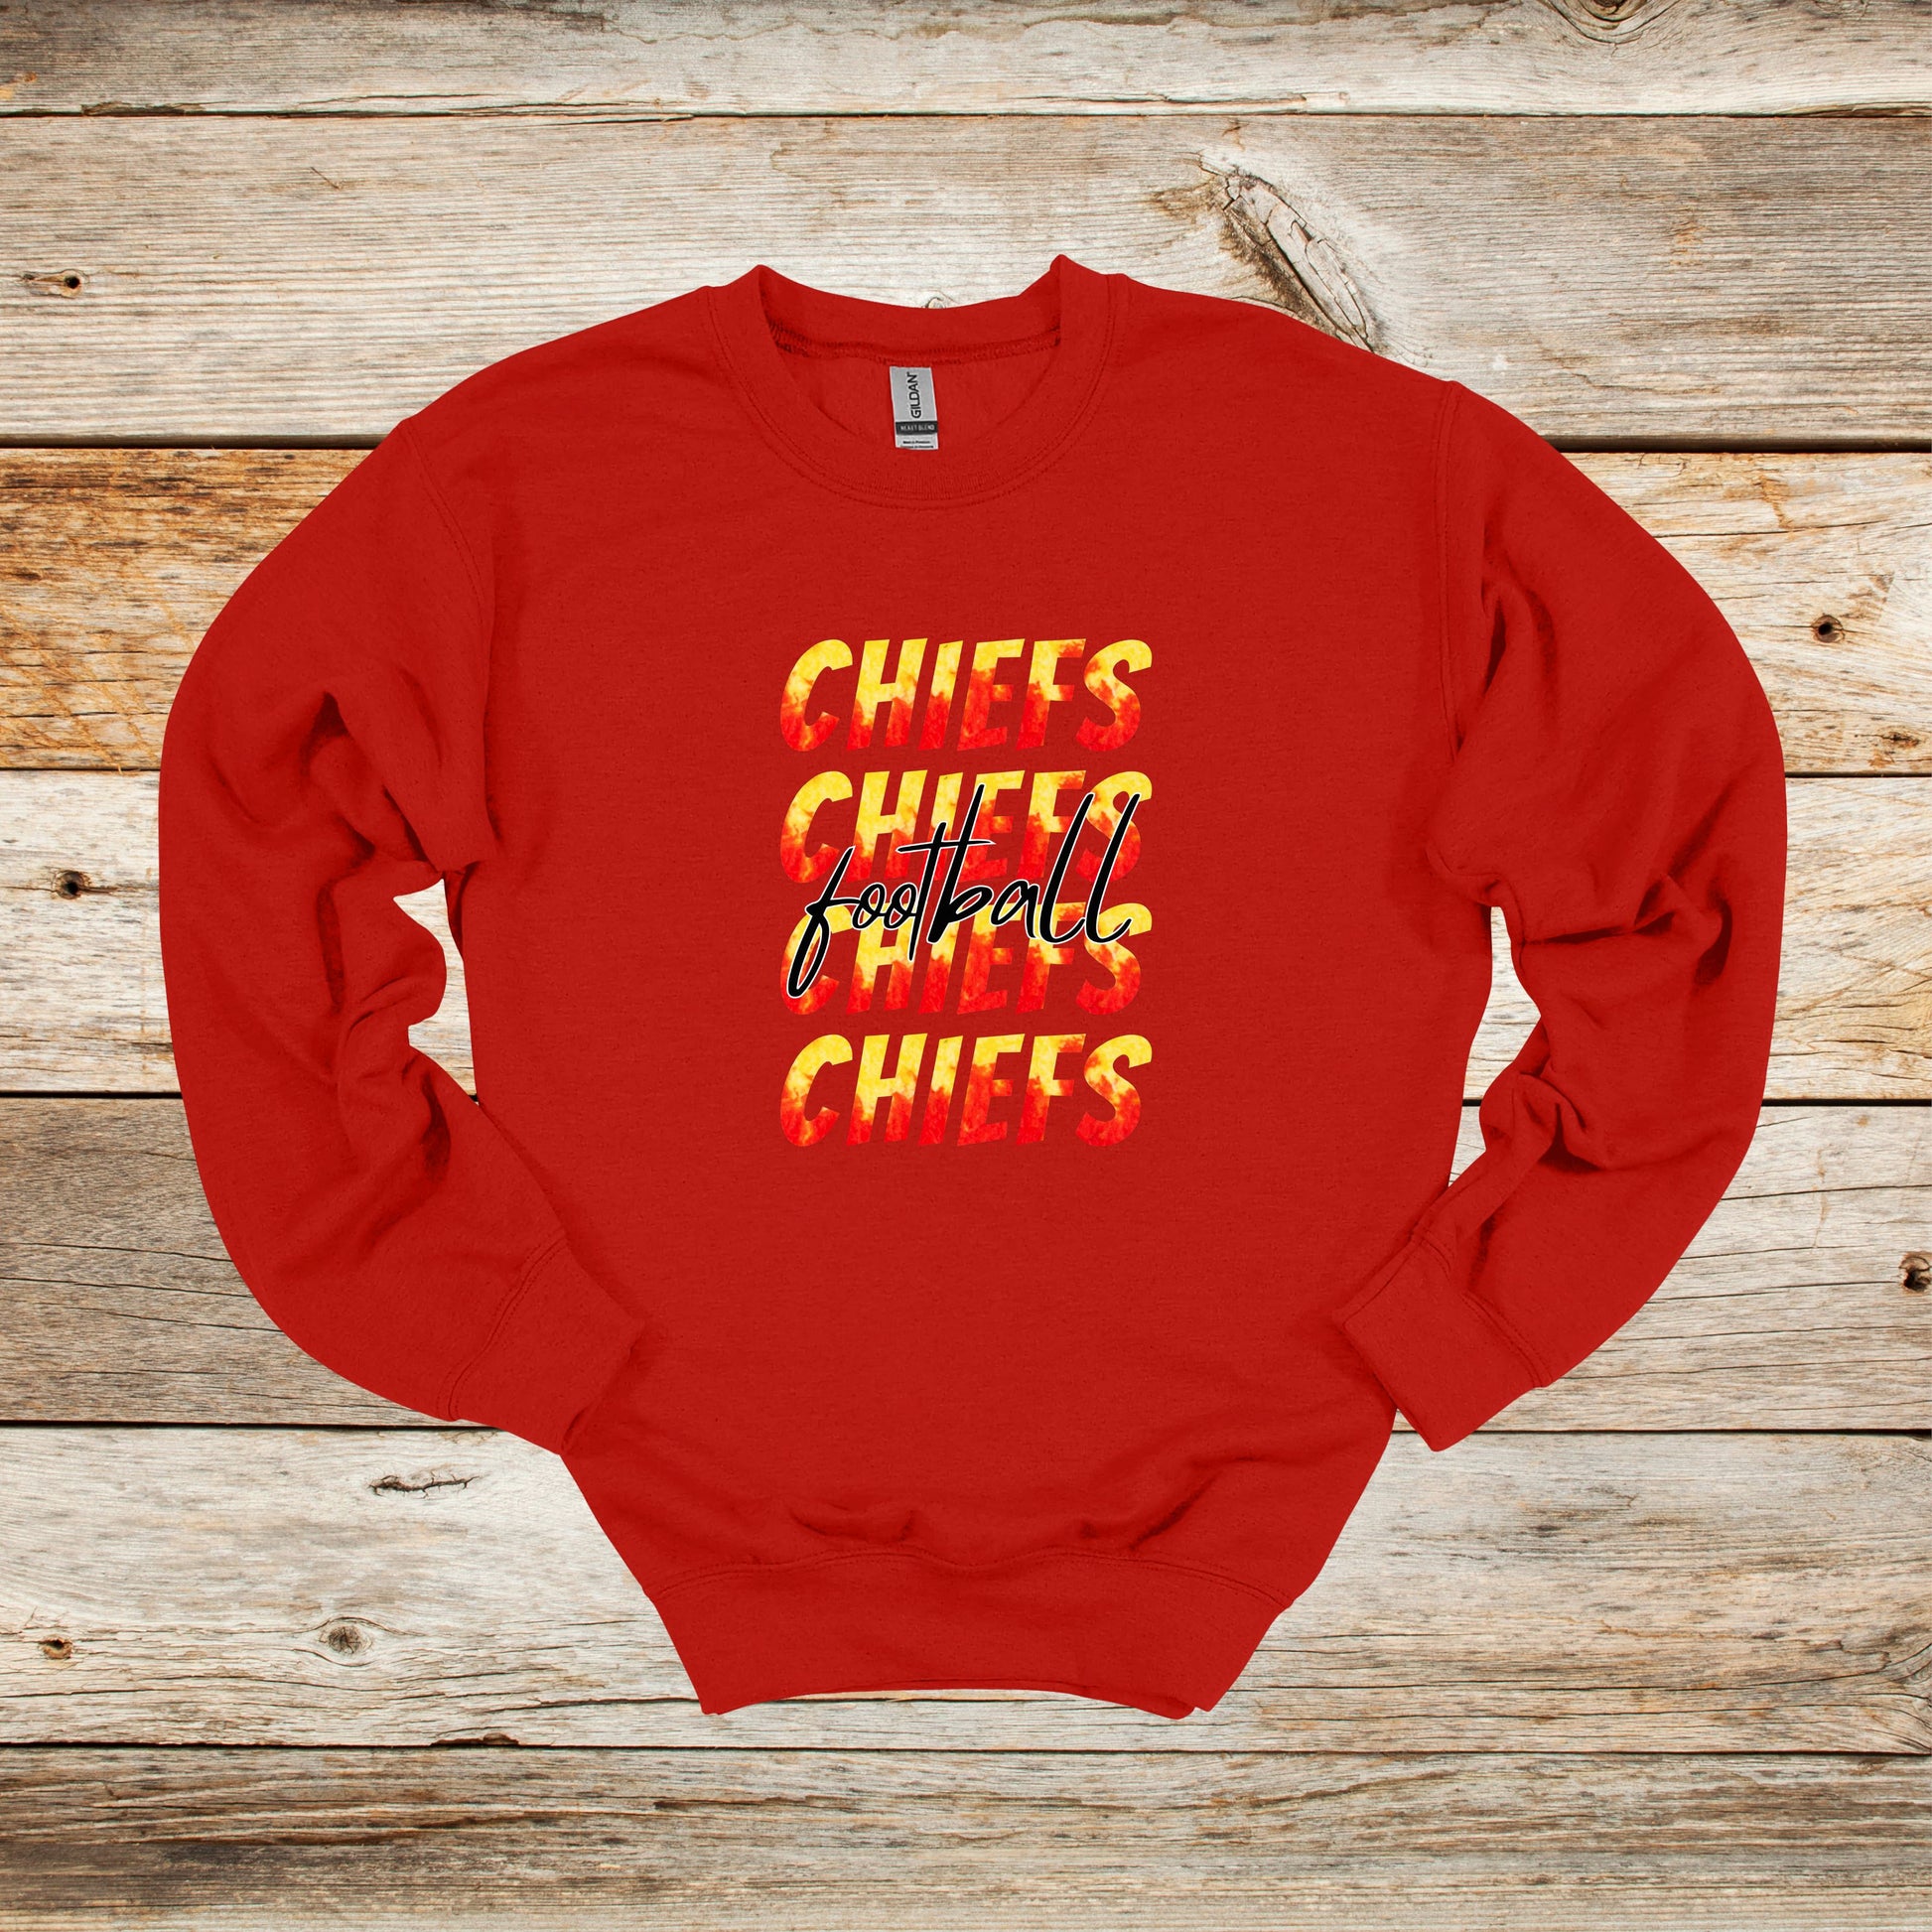 Football Crewneck and Hooded Sweatshirt - Kansas City Chiefs Football - Chiefs Football - Adult and Children's Tee Shirts - Sports Hooded Sweatshirt Graphic Avenue Crewneck Sweatshirt Red Adult Small